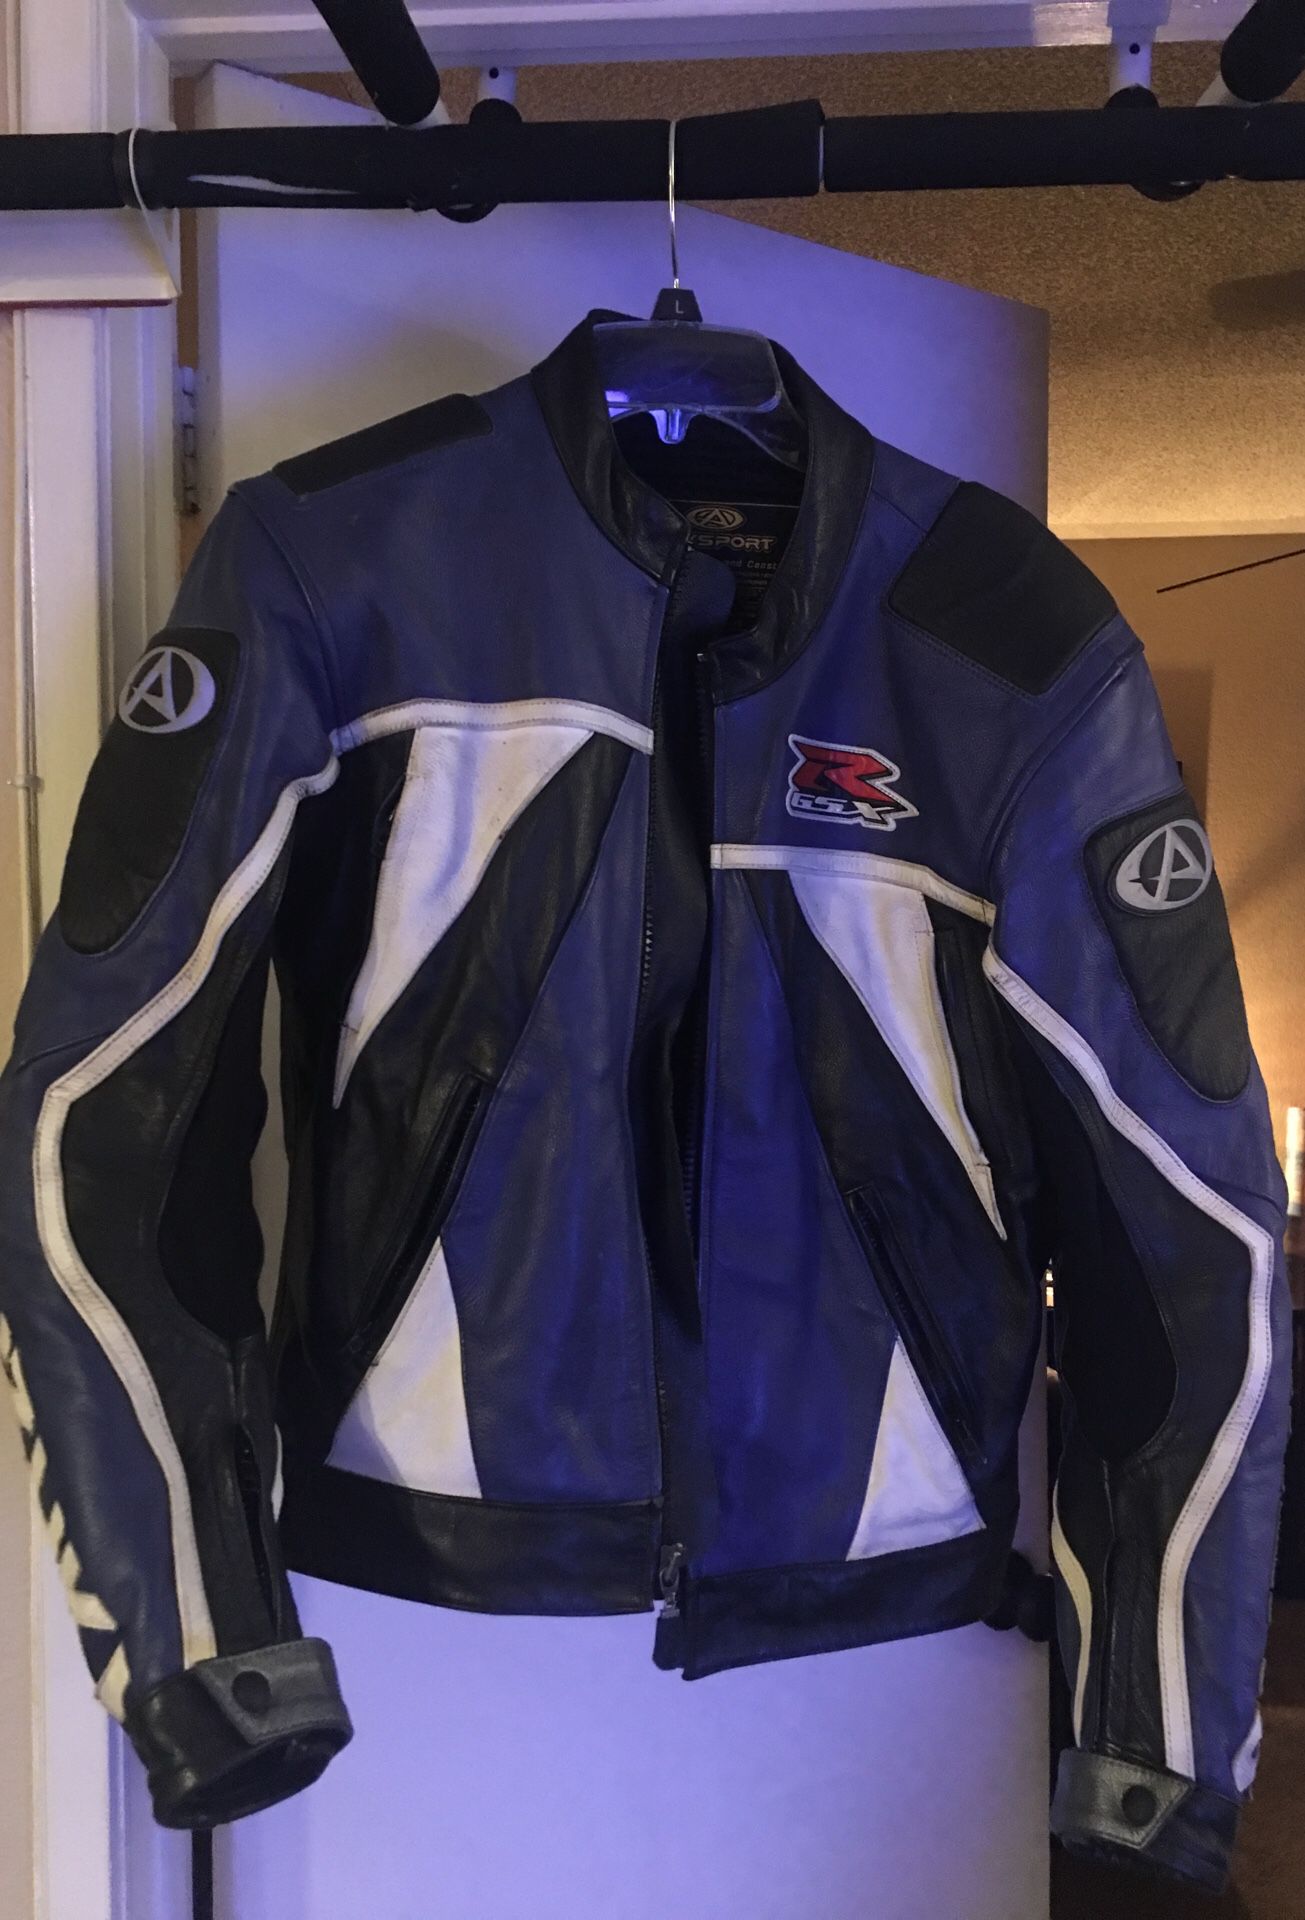 GSXR jacket